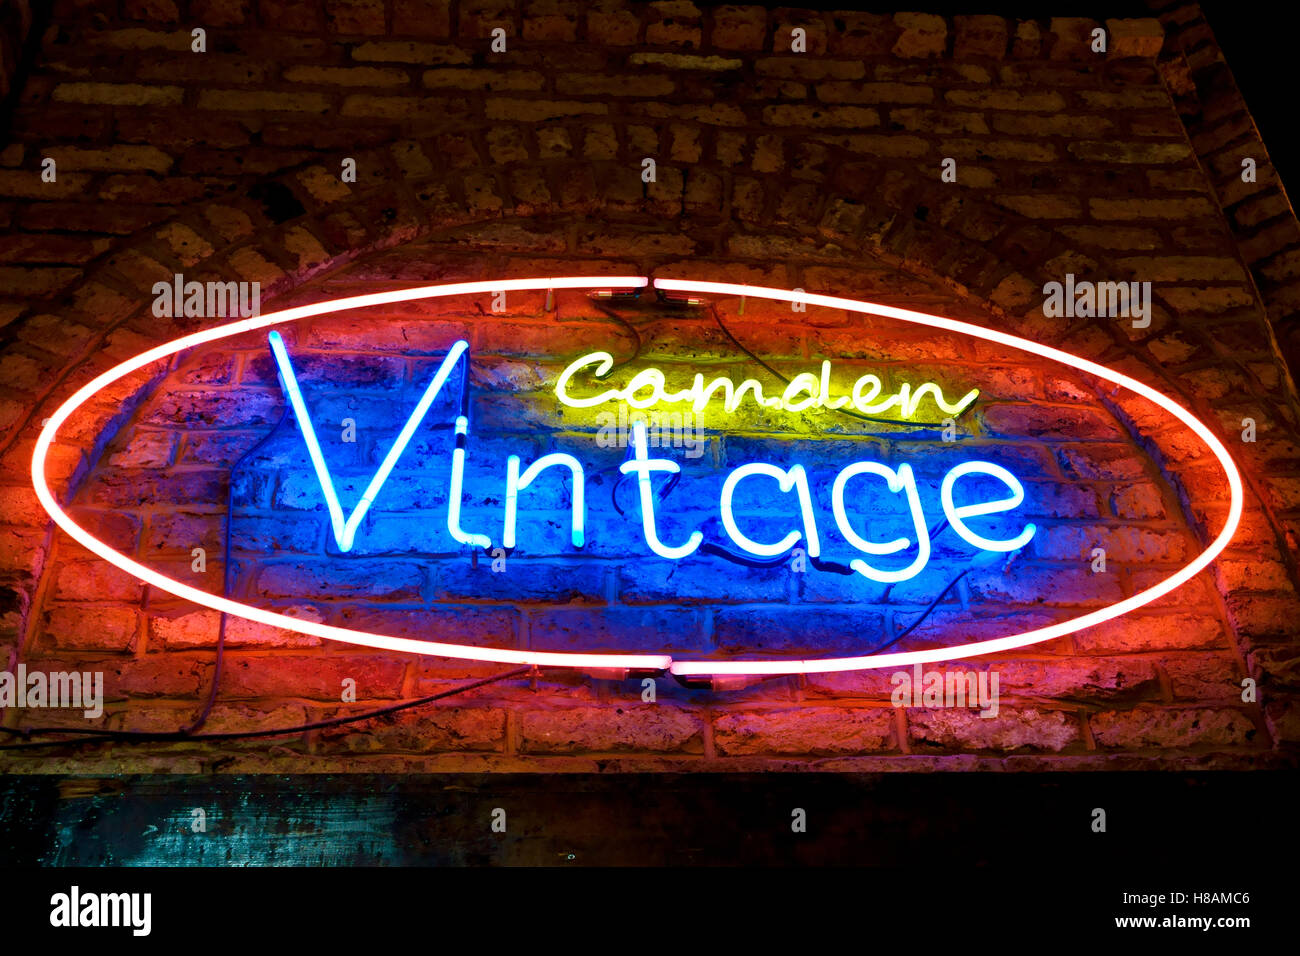 Camden Vintage segno al neon fuori stallo in stalle di Camden Market, Camden Town, Londra, Inghilterra, Gran Bretagna, Regno Unito, Gran Bretagna, Europa Foto Stock